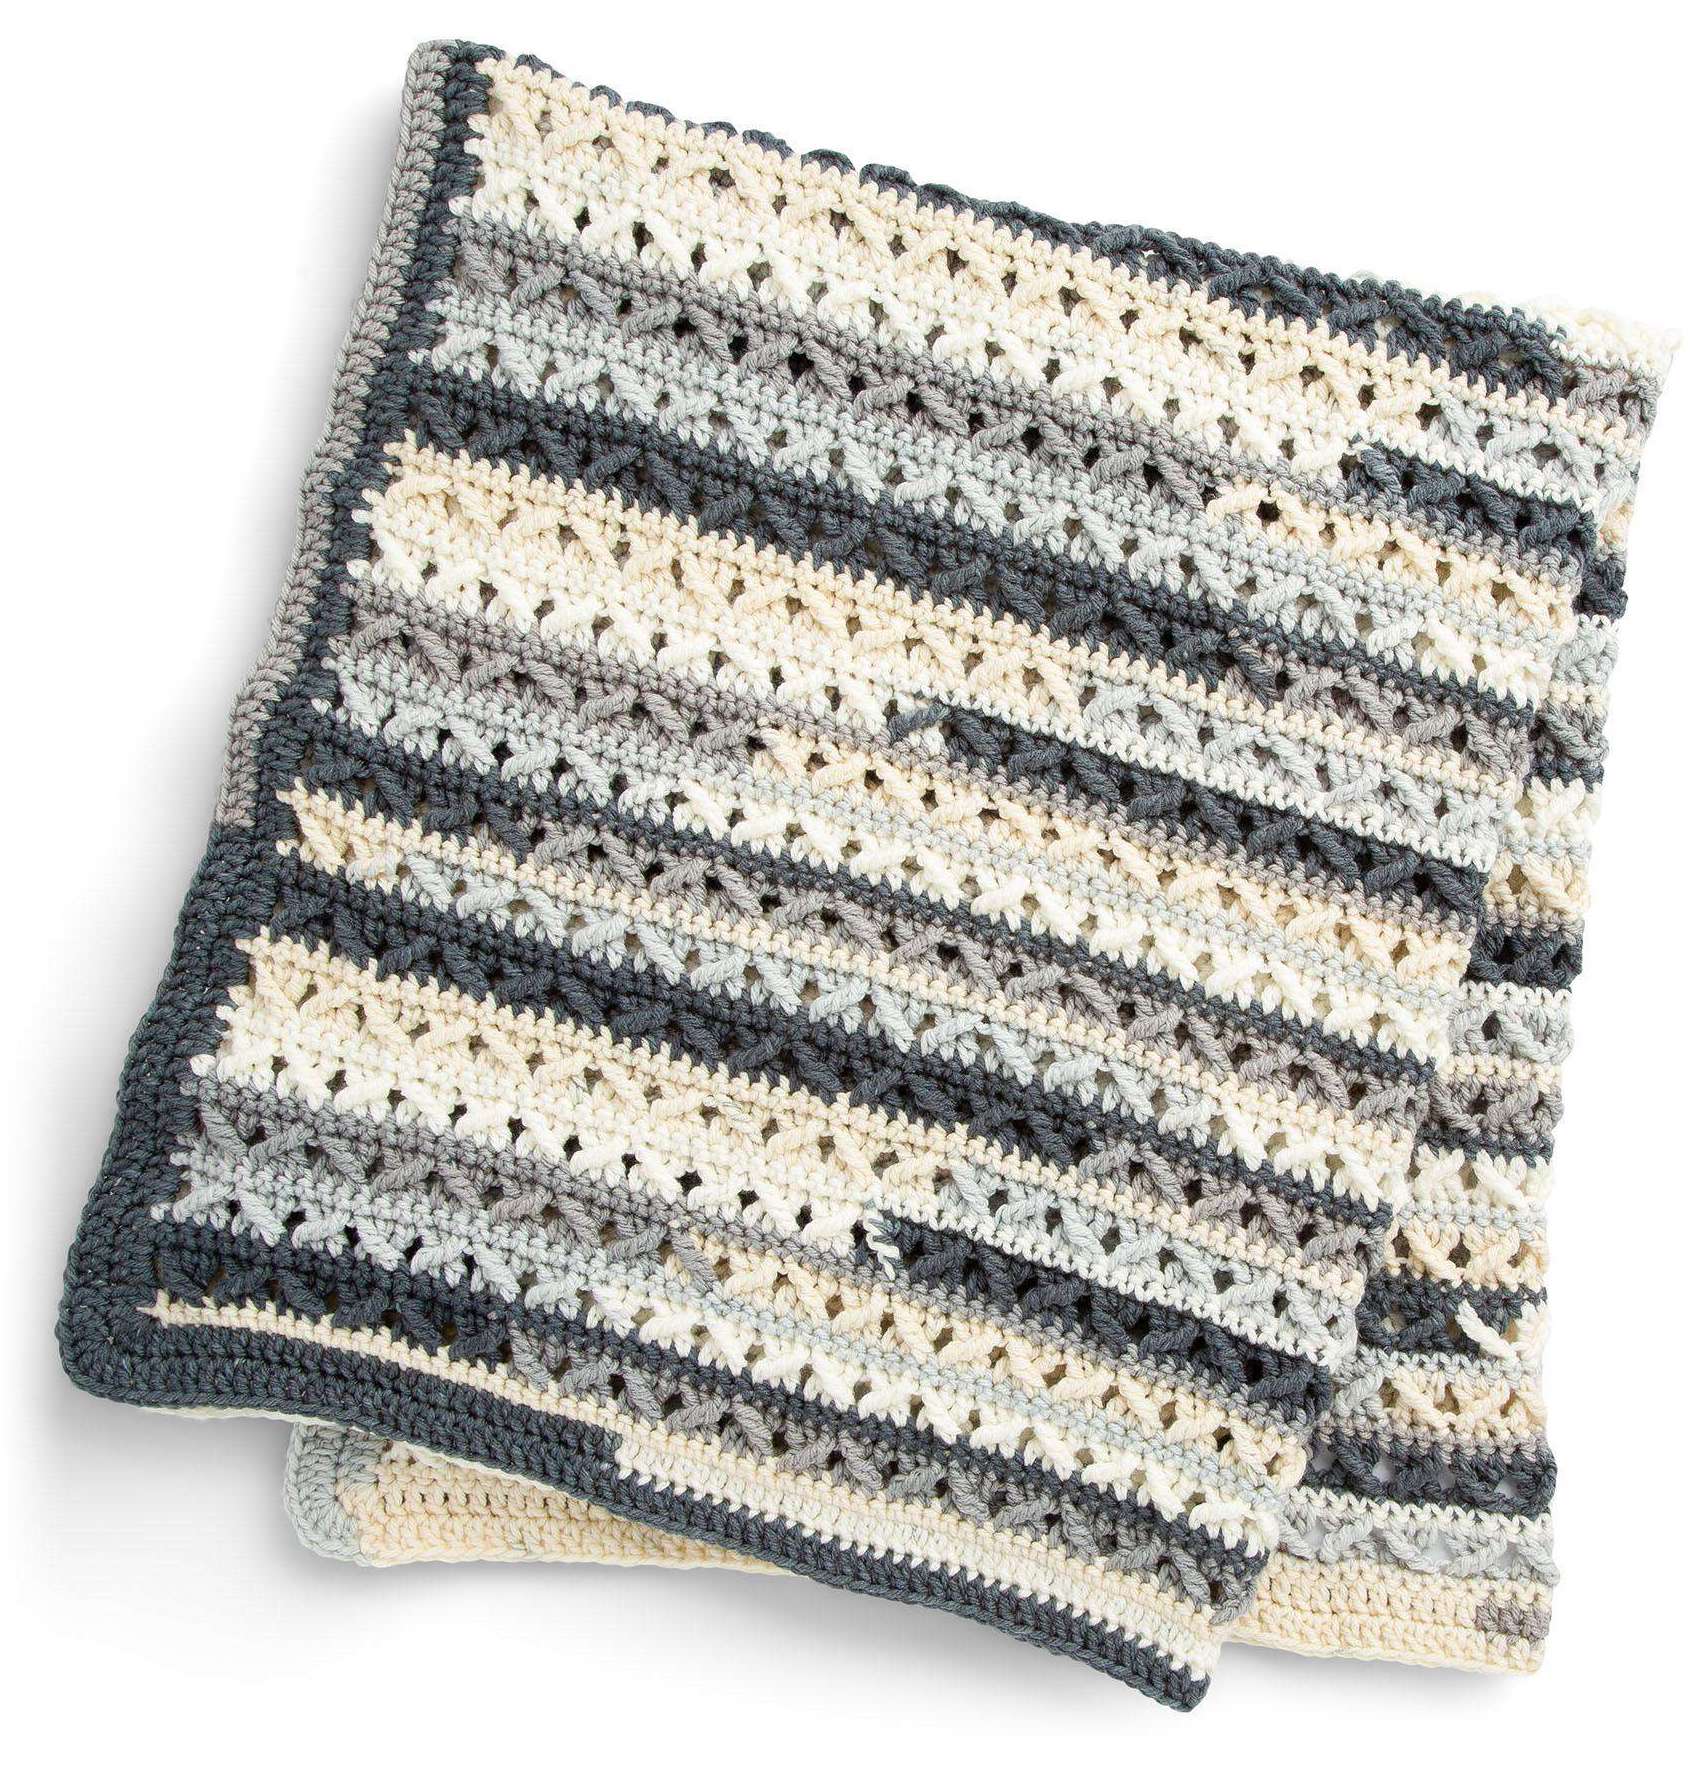 Lattice Lapghan - Free Crochet Pattern